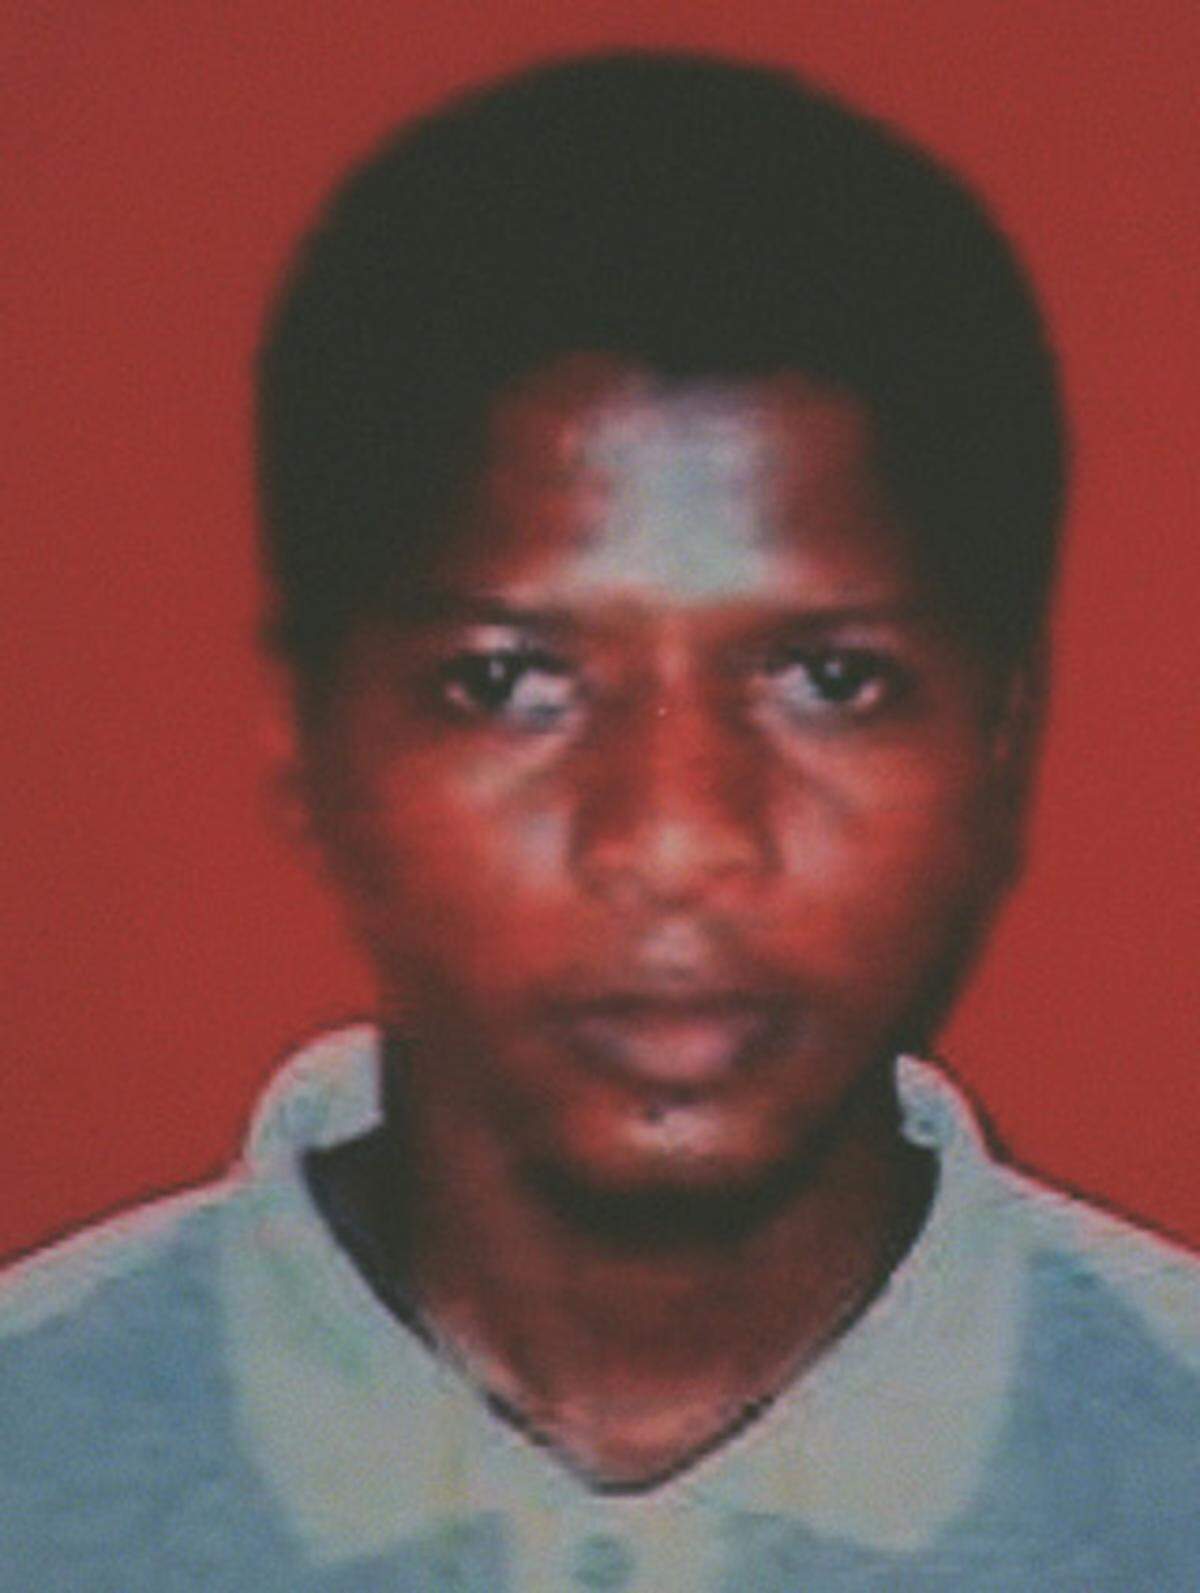 Im Juni 2009 wurde Ahmed Ghailani als erster Guantanamo-Häftling zu einem zivilen Gerichtsverfahren in die USA gebracht. Ghailani galt als einer der 14 "High value"-Gefangenen, die 2006 nach Guantanamo gebracht wurde. Der mutmaßliche al-Qaida-Terrorist soll eine Hauptrolle bei den Terroranschlägen auf die US-Botschaften in Kenia und Tansania 1988 gespielt haben.